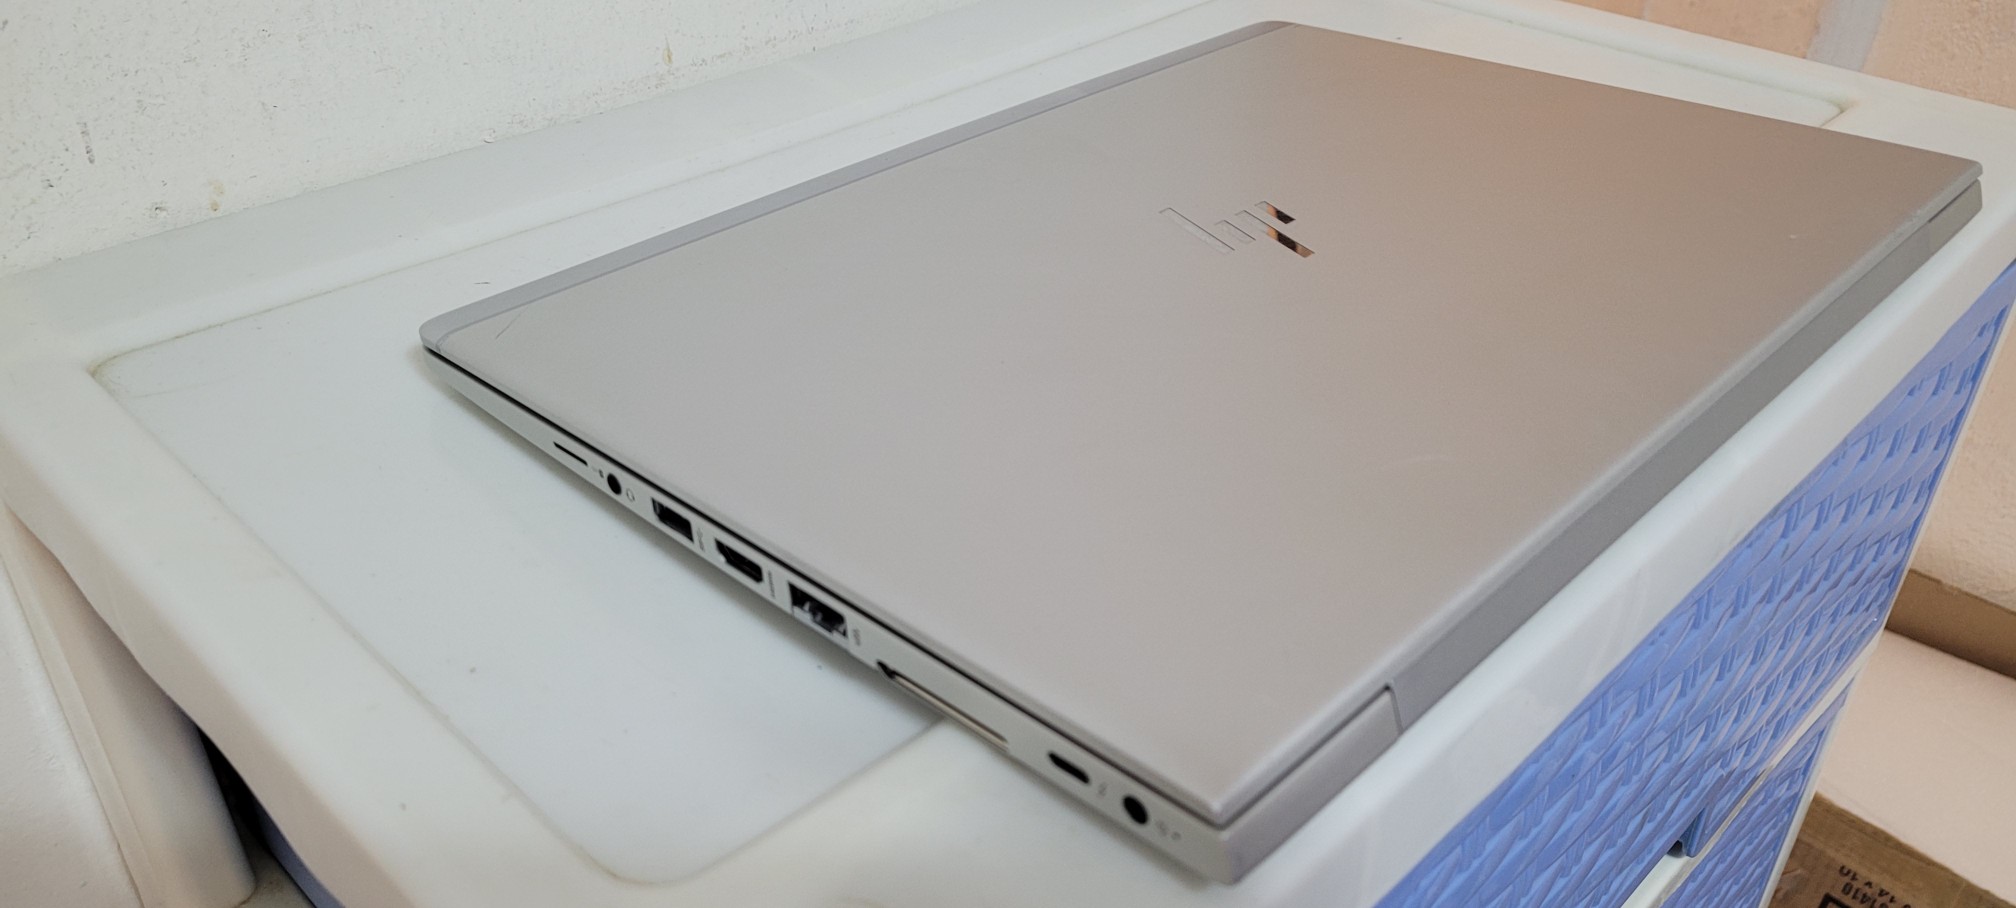 computadoras y laptops - laptop hp Slim 14 Pulg Core i5 7ma Gen Ram 8gb ddr4 Disco 256gb SSD Wifi  2